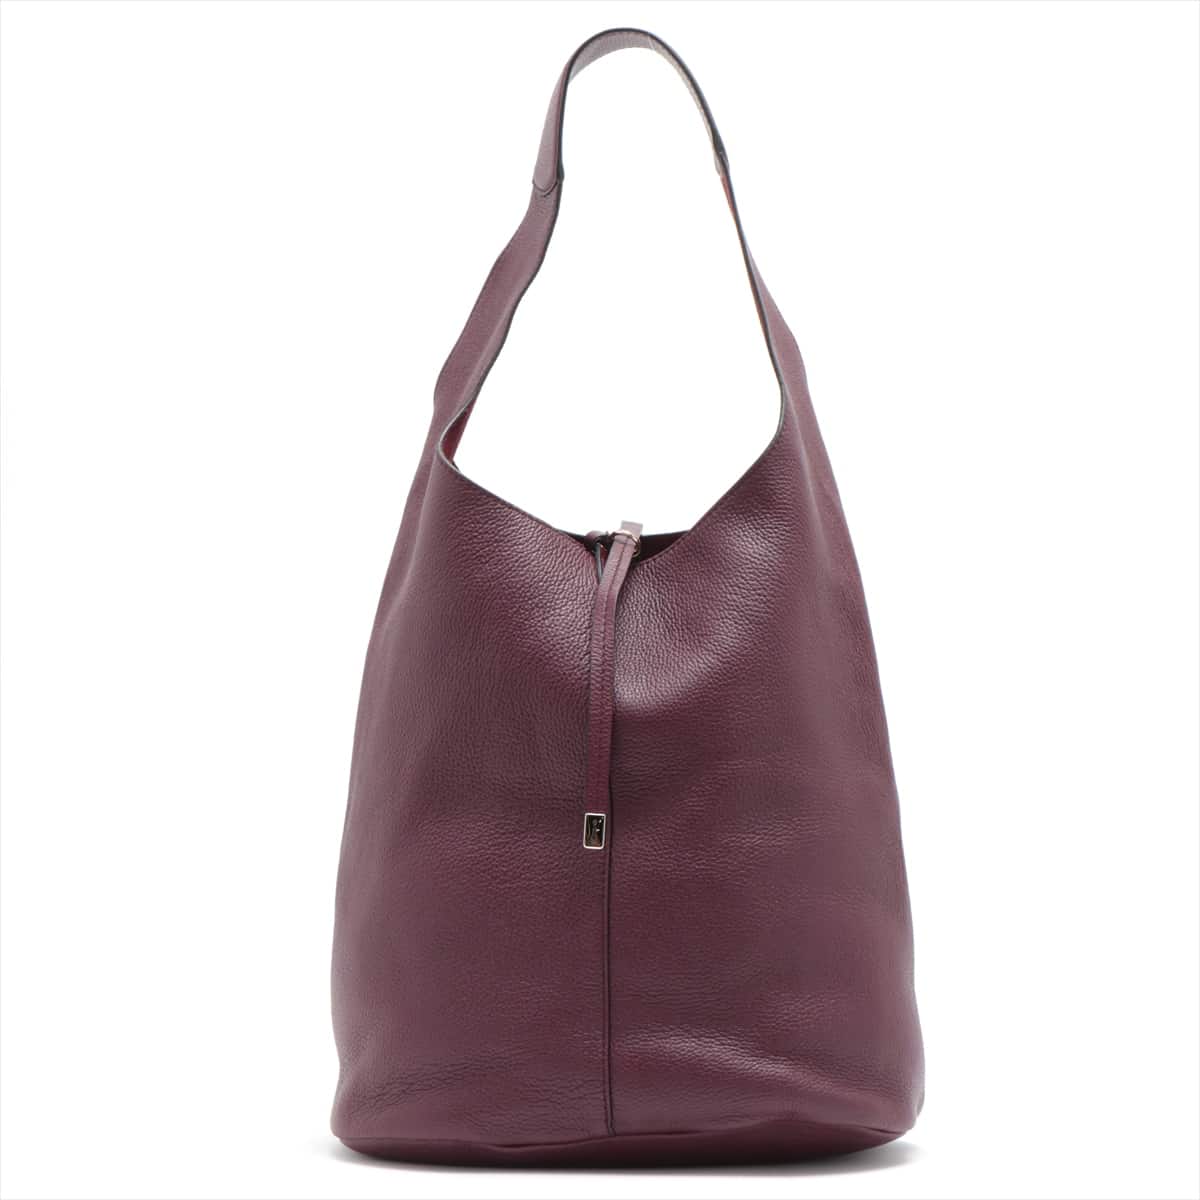 Ferragamo Leather One shoulder bag Bordeaux with pouch